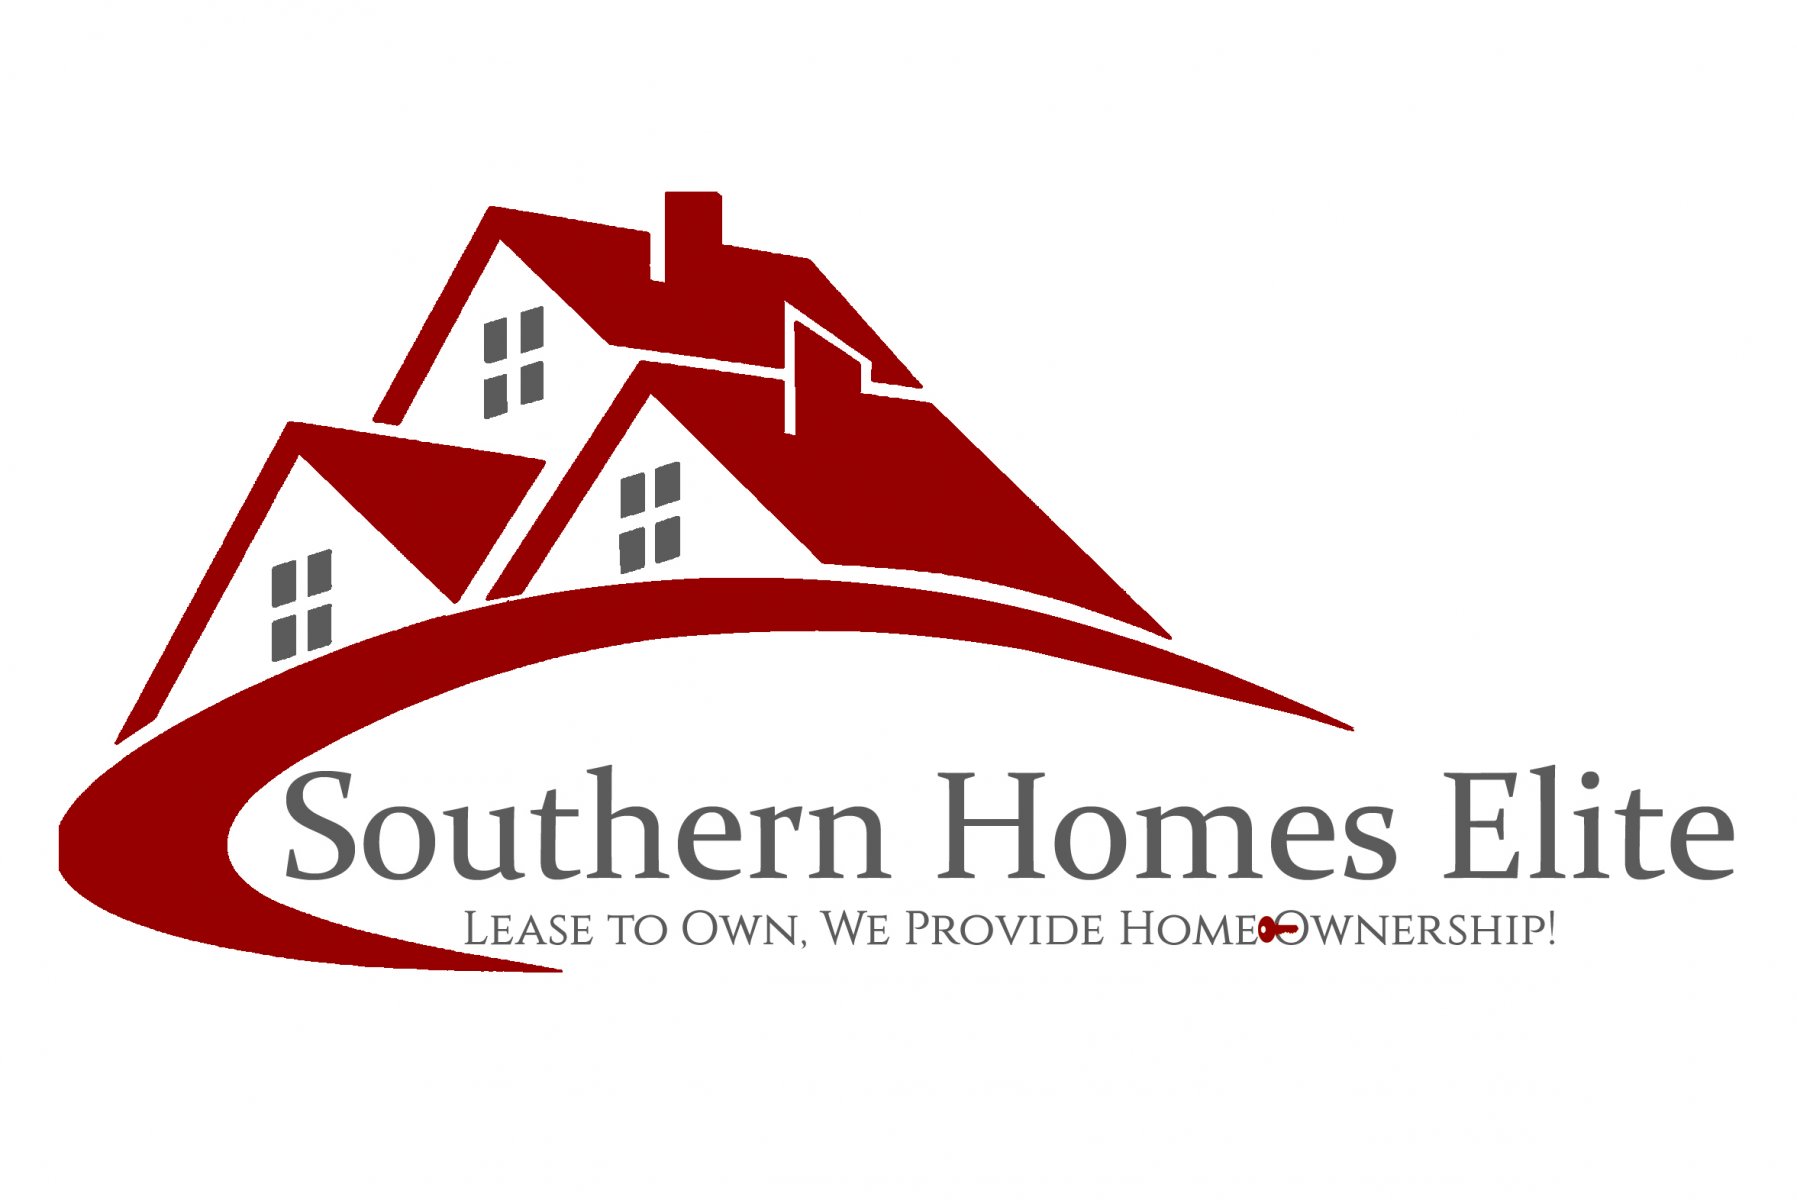 Southern Homes Elite logo